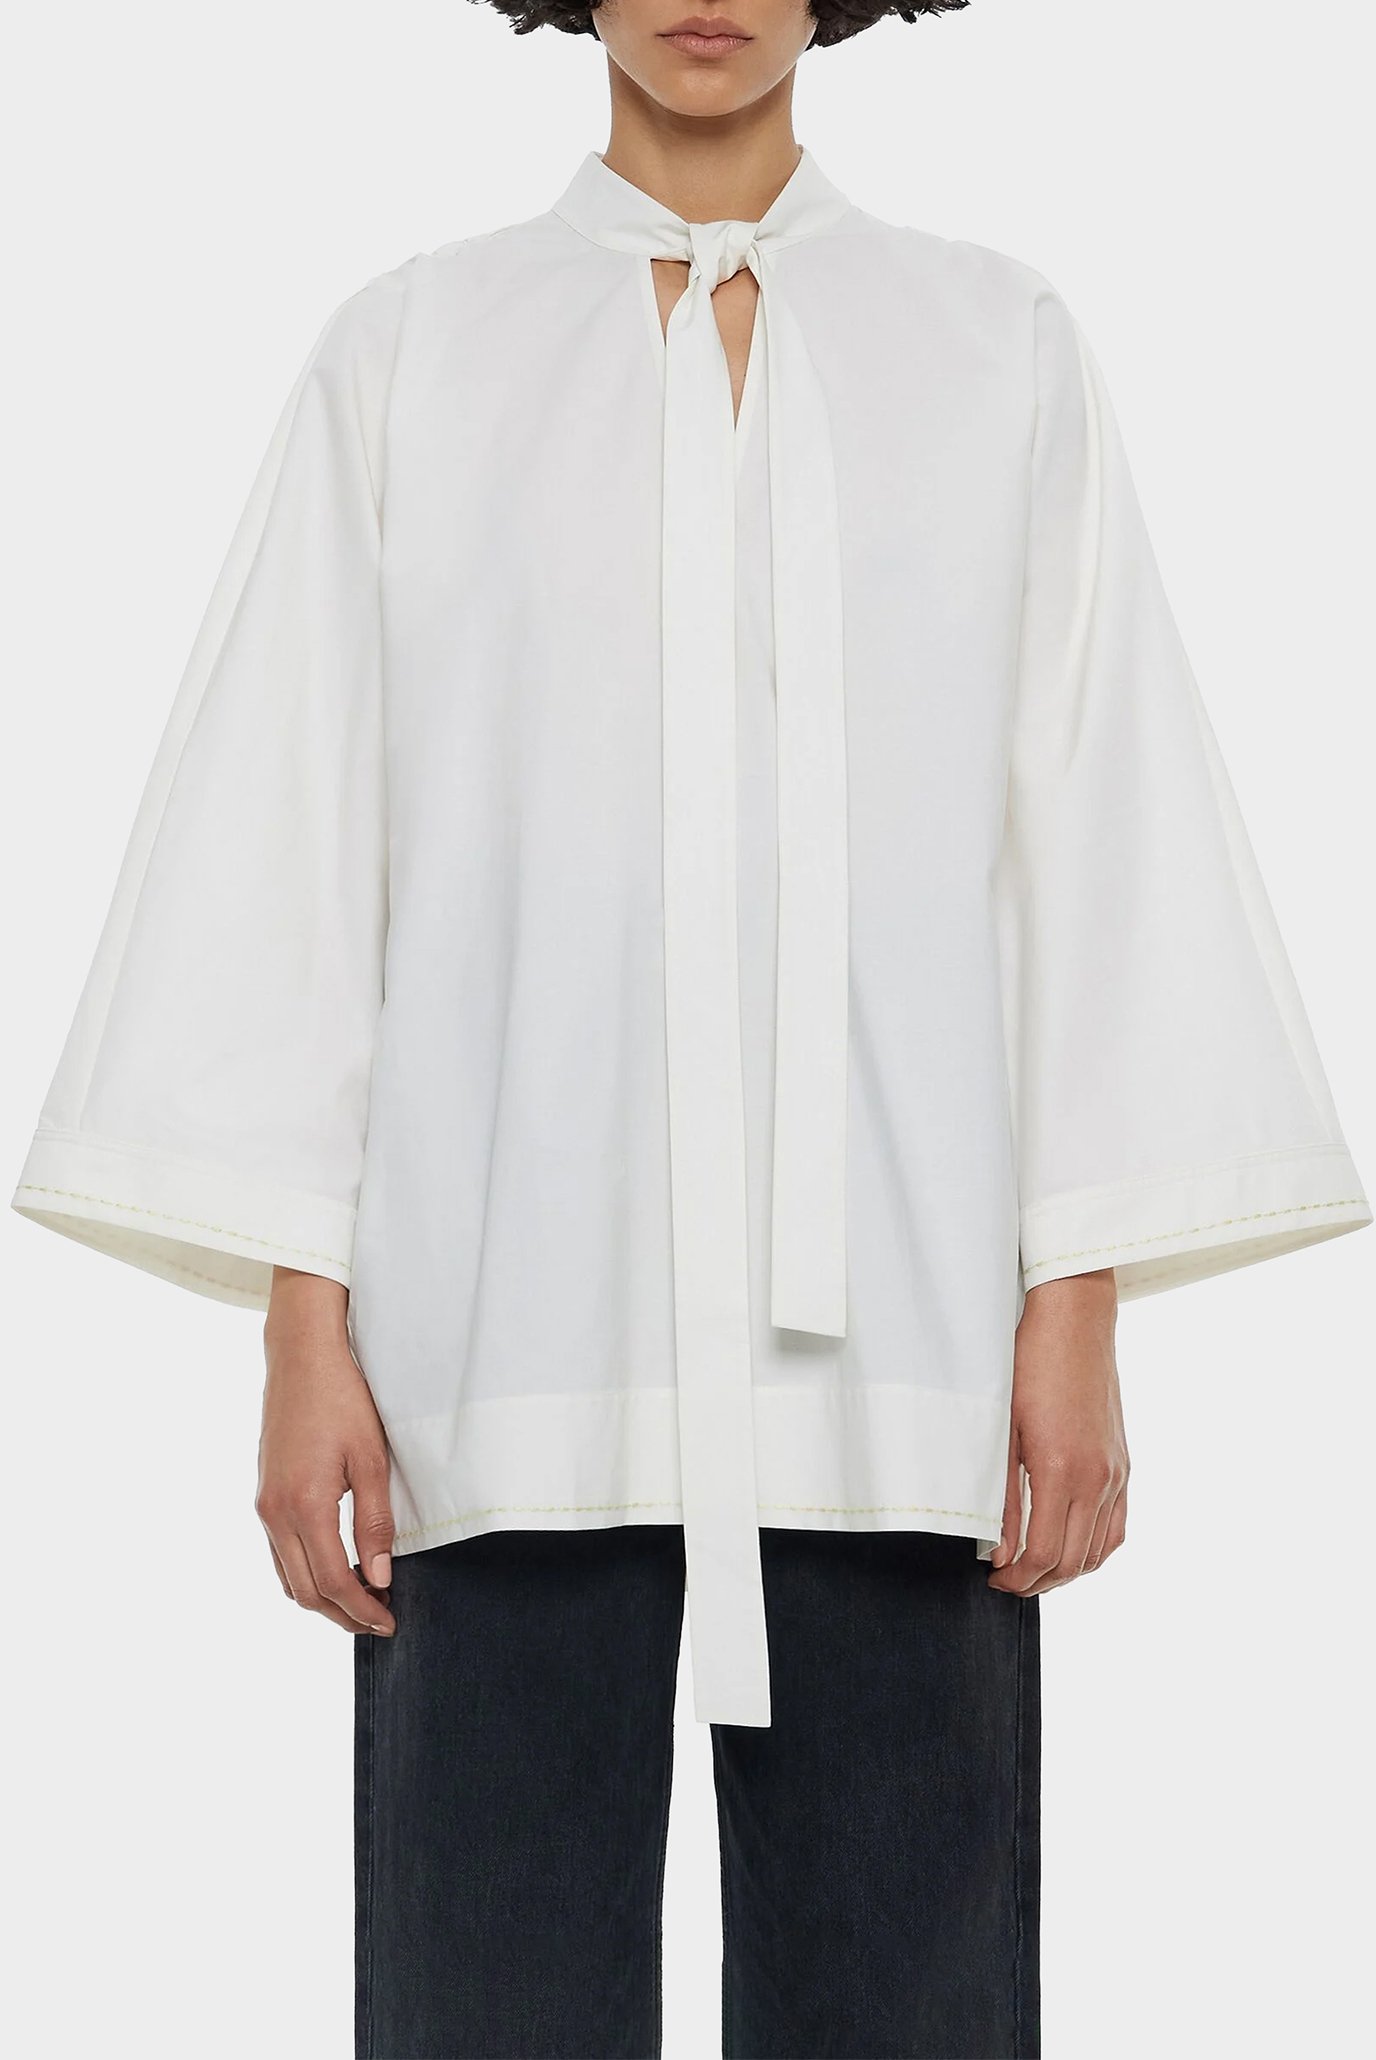 Жіноча біла блуза 1